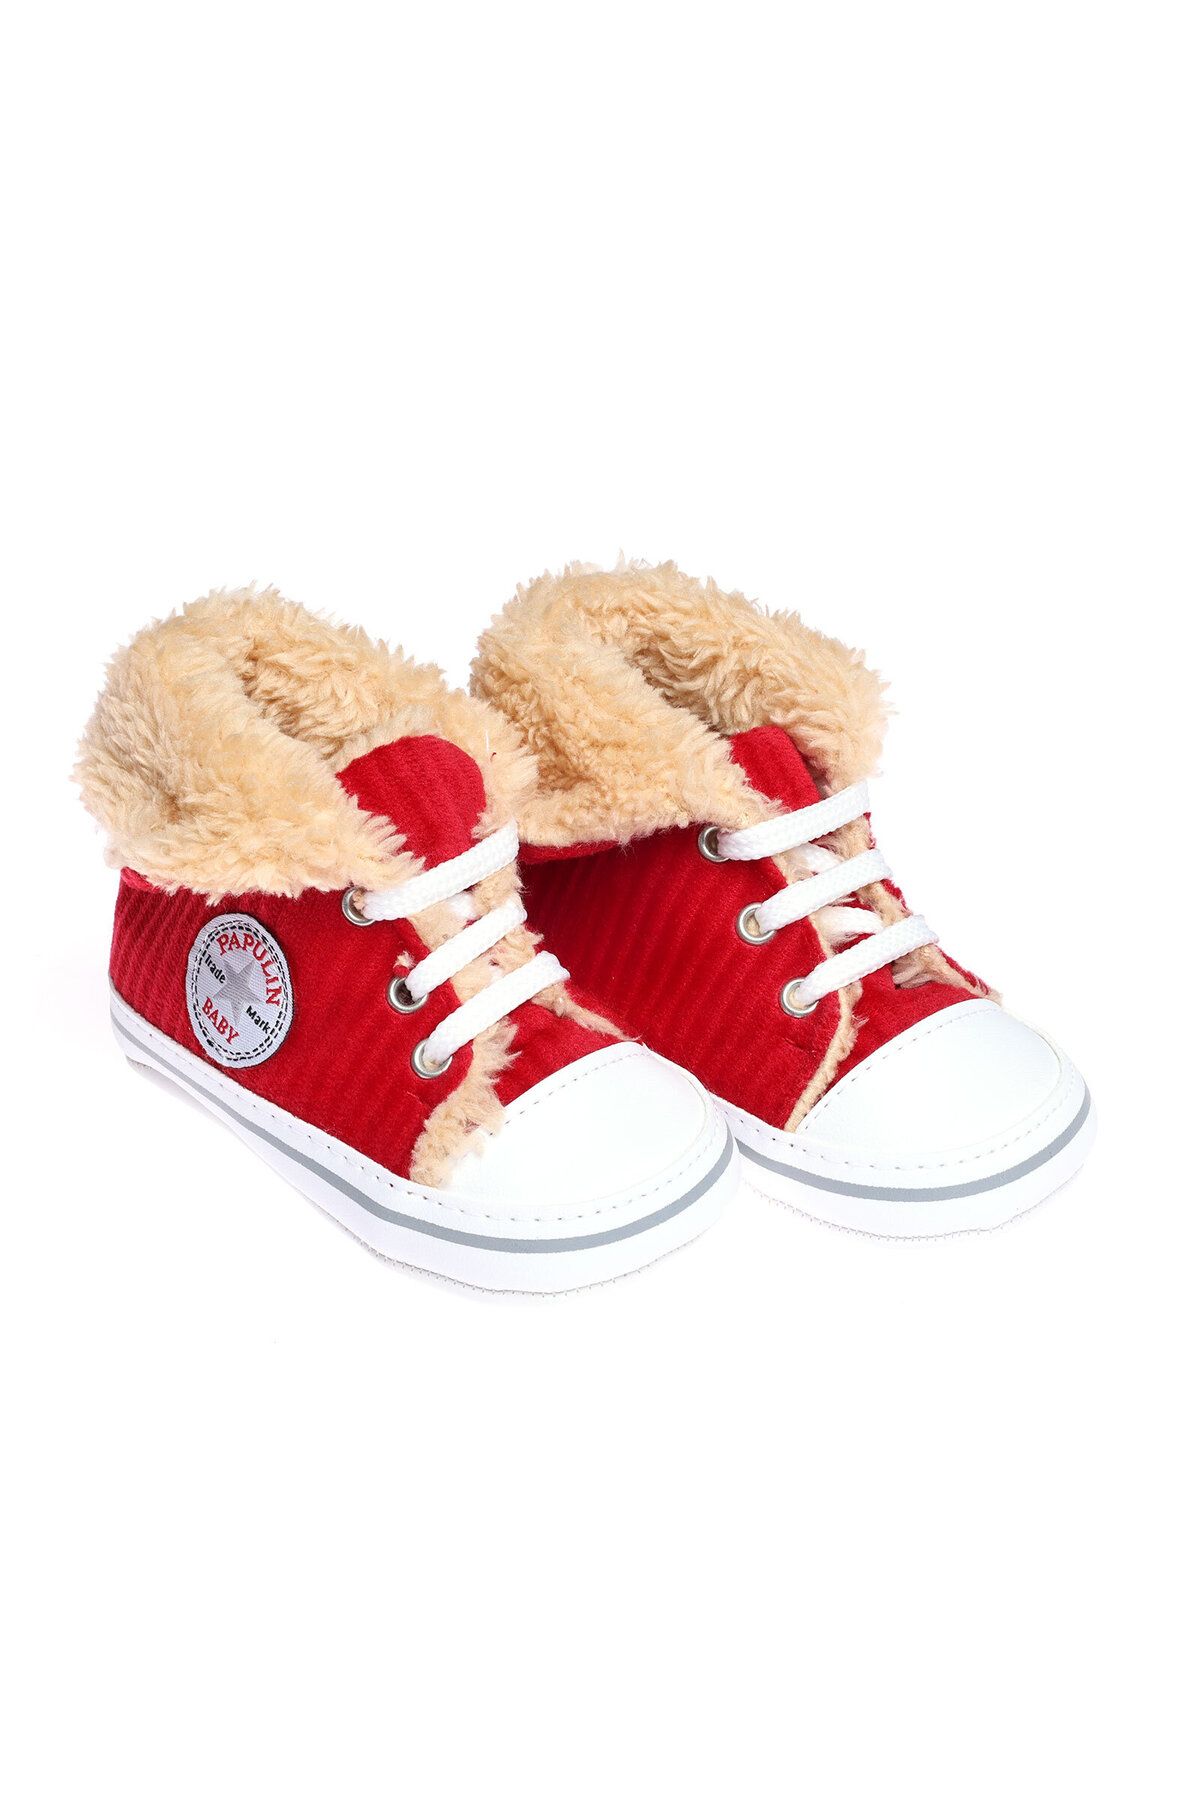 Papulin Kadife bebek ilk adım 0-6-12 ay bot sonbahar-kış yumuşak ayakkabı patik